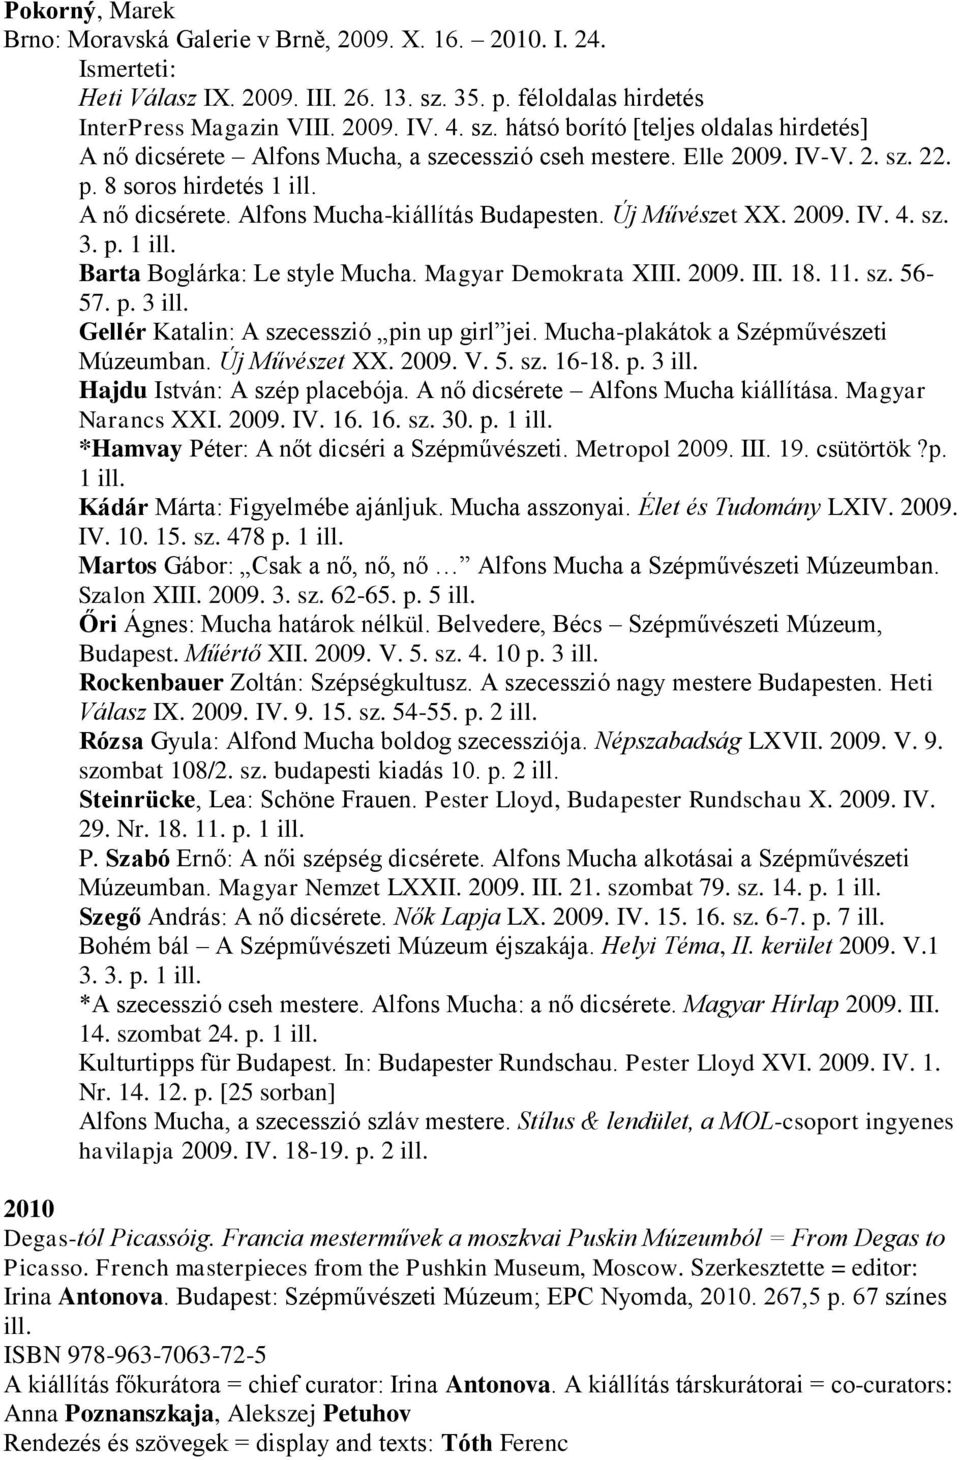 A nő dicsérete. Alfons Mucha-kiállítás Budapesten. Új Művészet XX. 2009. IV. 4. sz. 3. p. 1 ill. Barta Boglárka: Le style Mucha. Magyar Demokrata XIII. 2009. III. 18. 11. sz. 56-57. p. 3 ill.